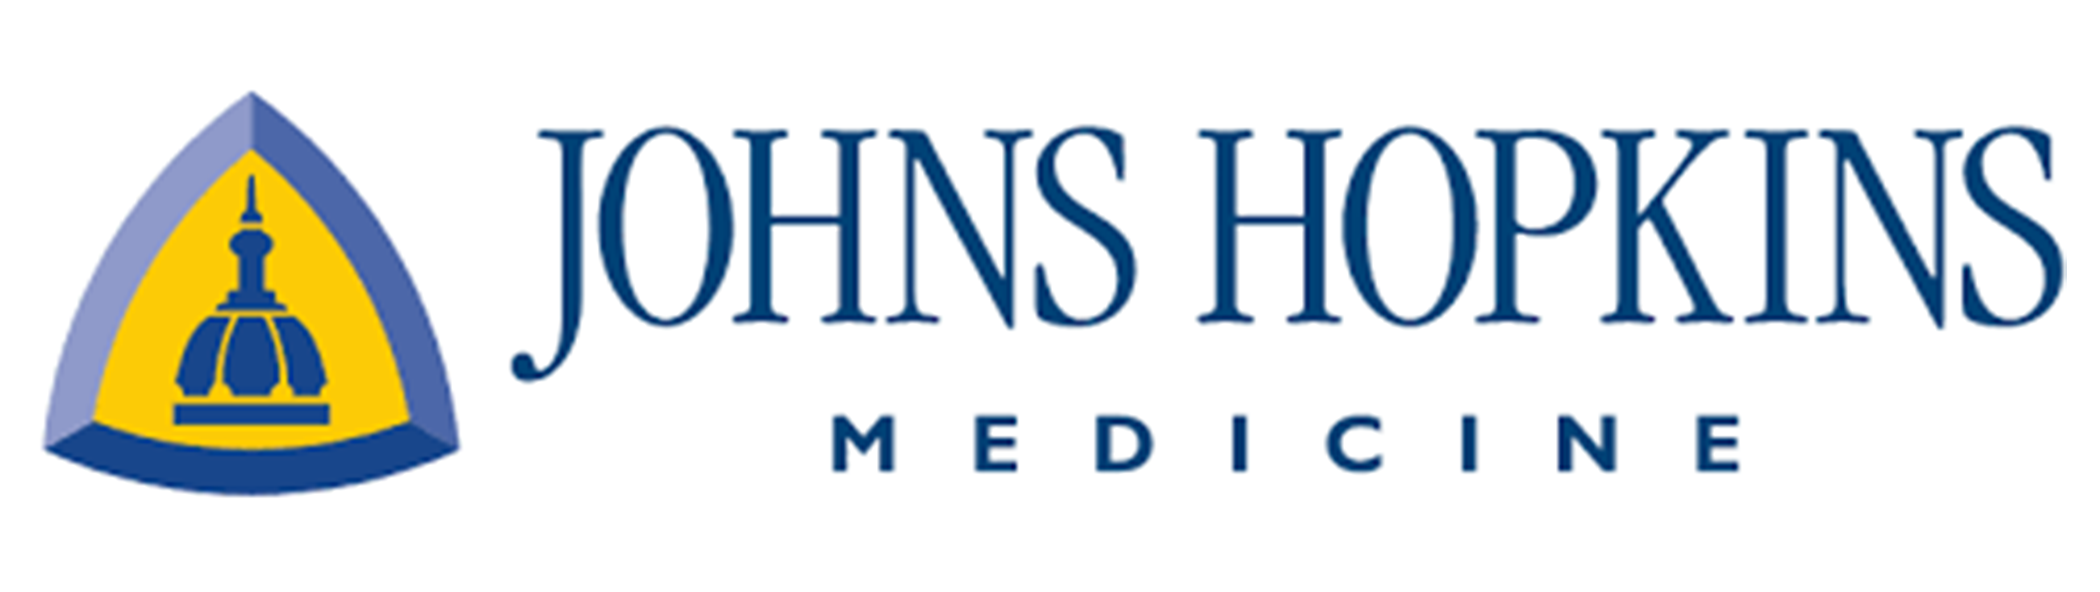 White logo with blue writing indicating John Hopkins Hospital